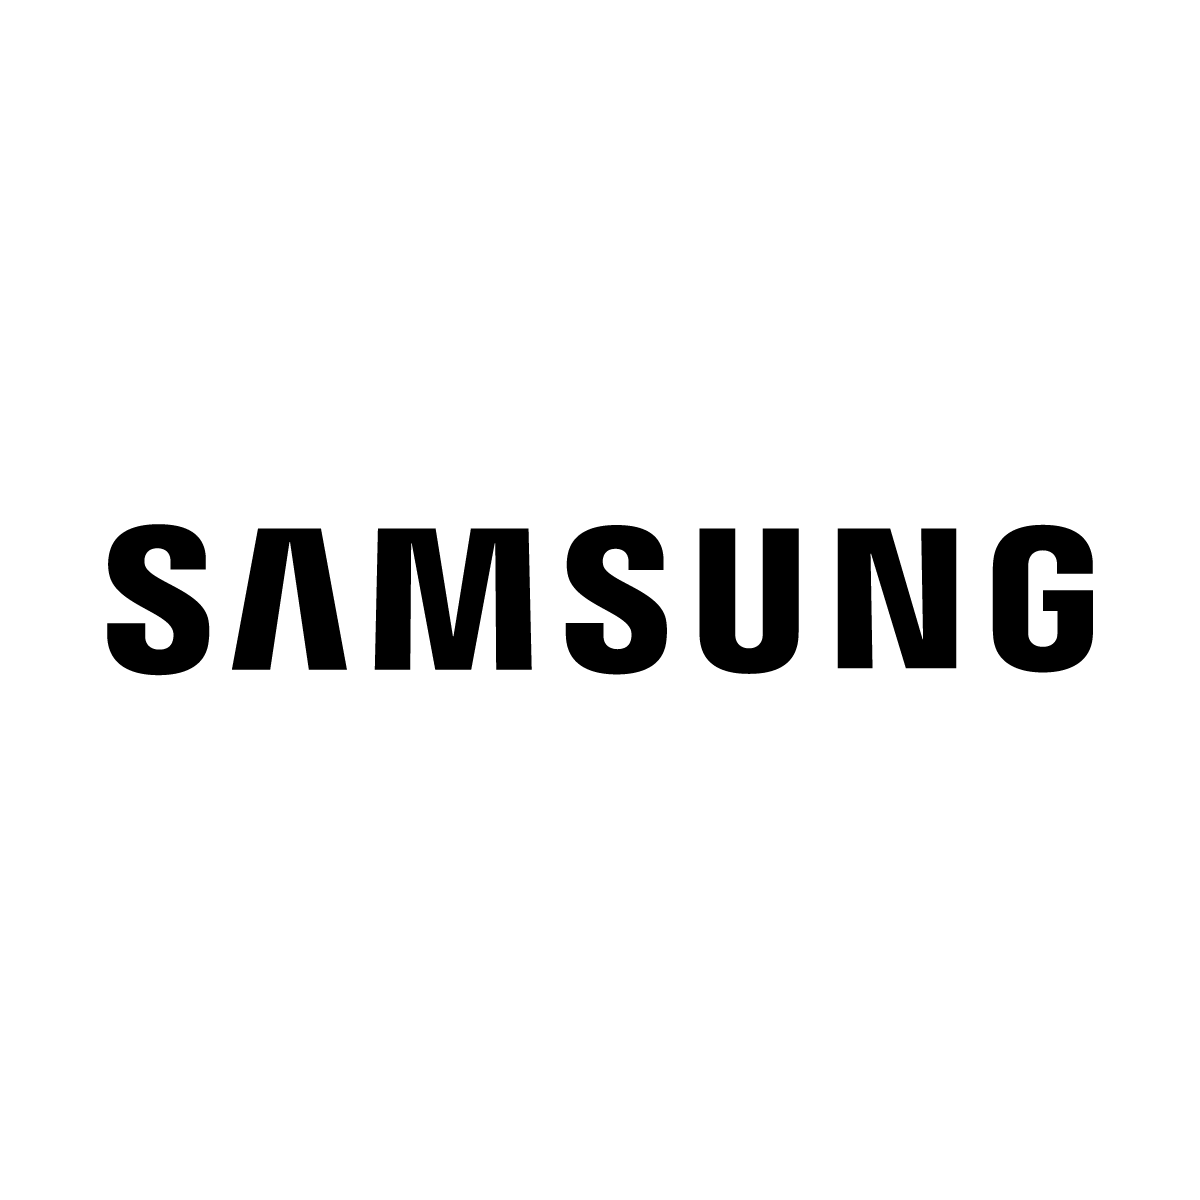 Samsung black logo.png